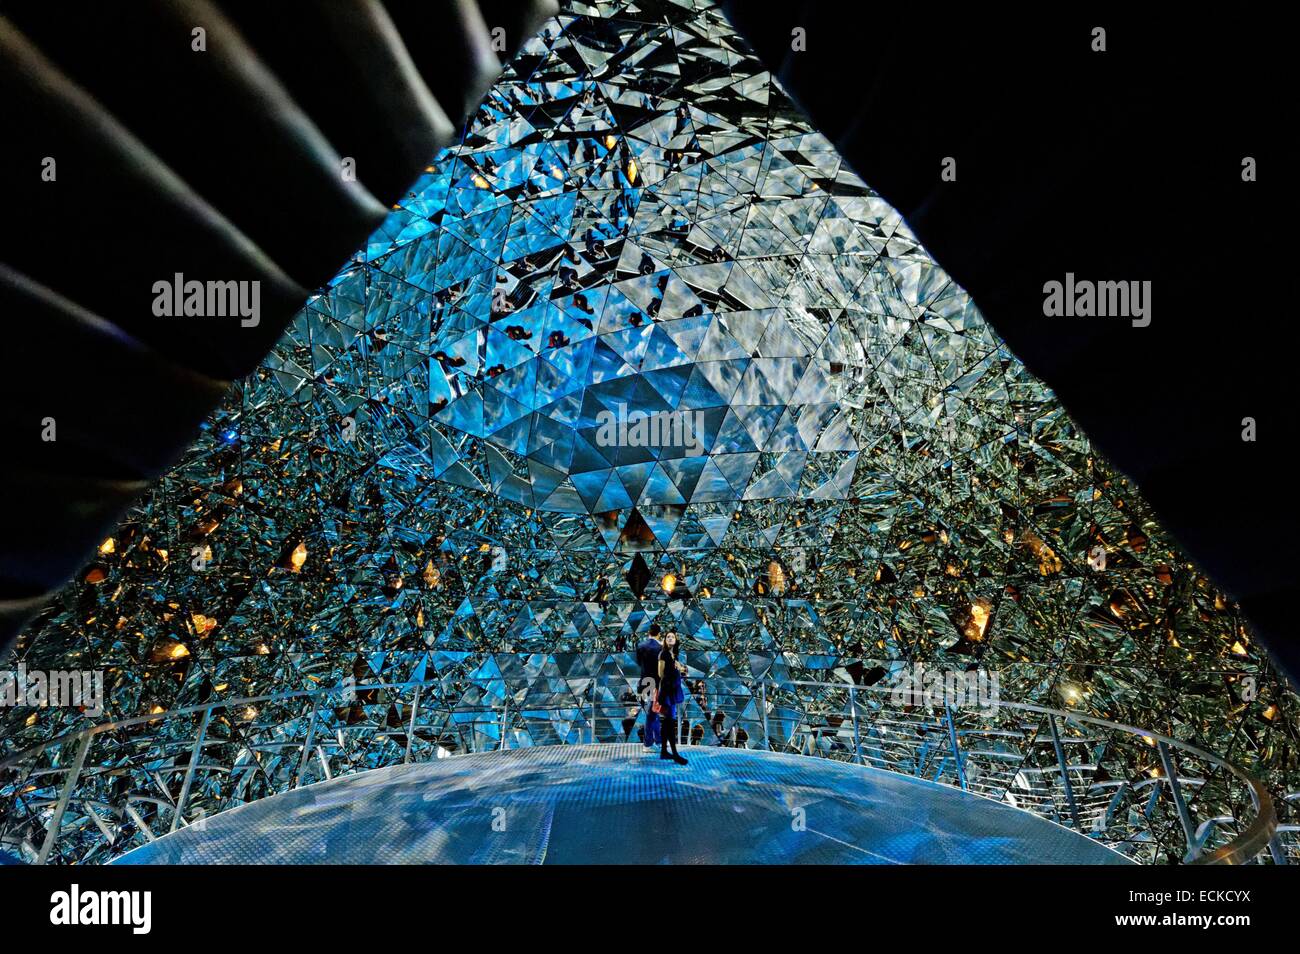 Austria, Tirolo, Wattens, Swarovski Crystal Worlds, (Swarovski Kristallwelten) collezione d'arte, museo, cupola in cristallo da Tord Boontje e Alexander McQueen Foto Stock